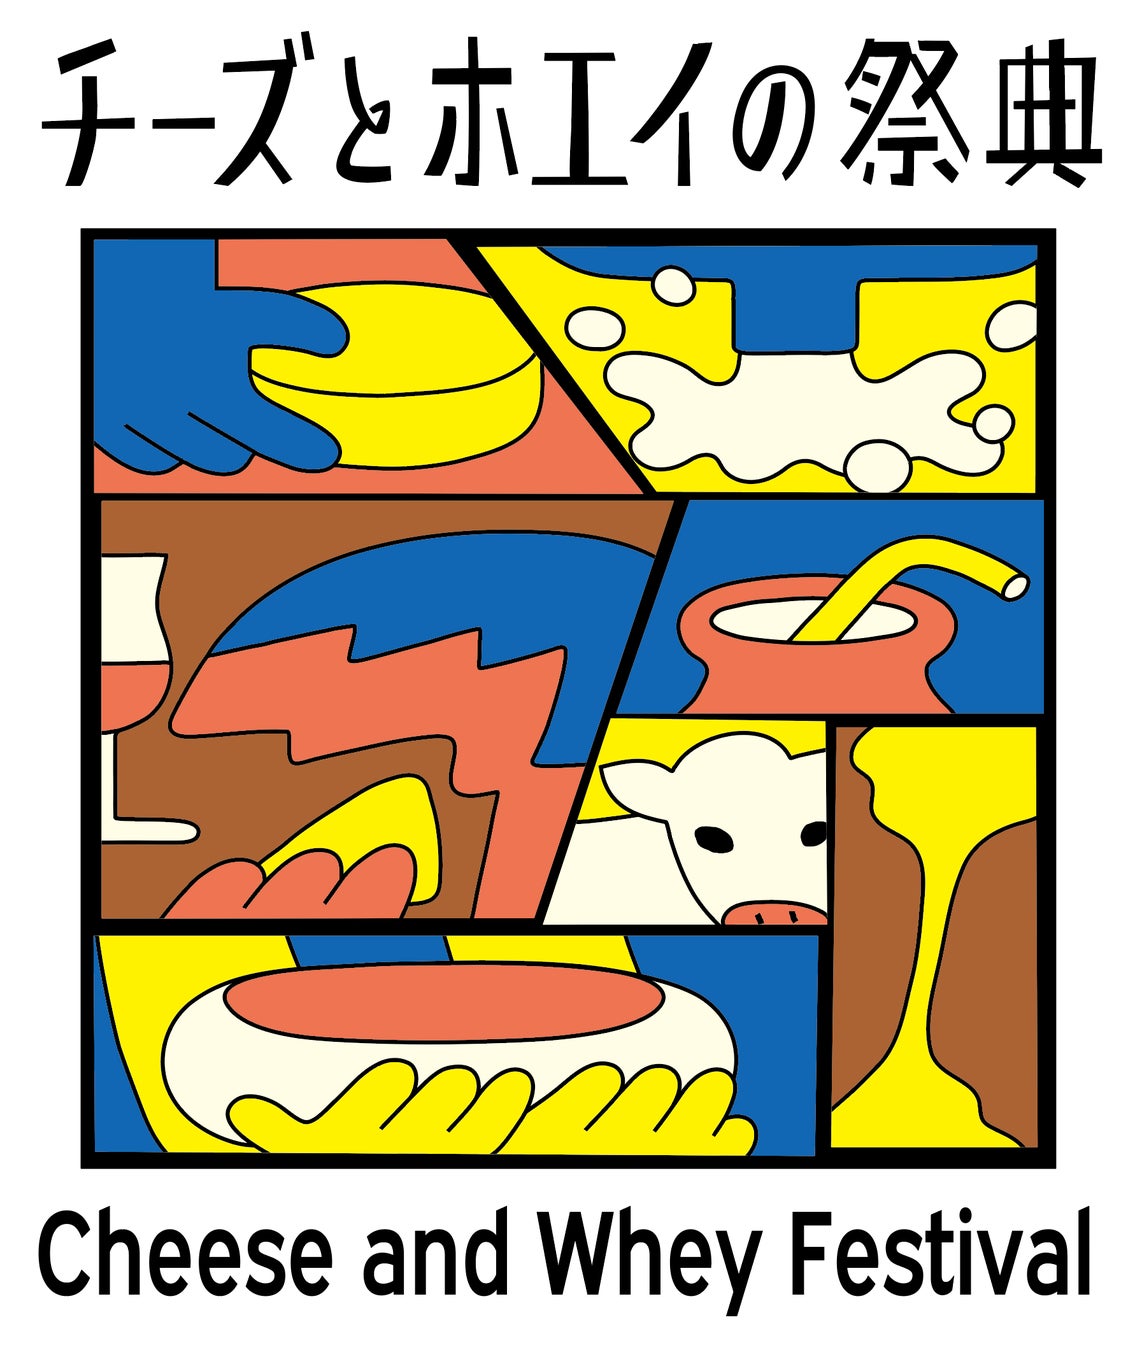 ホエイの価値をつくり、チーズとホエイを味わい尽くす、那須発のイベント「チーズとホエイの祭典 」10月28日(土)、29日(日)に那須で初開催しますのサブ画像1